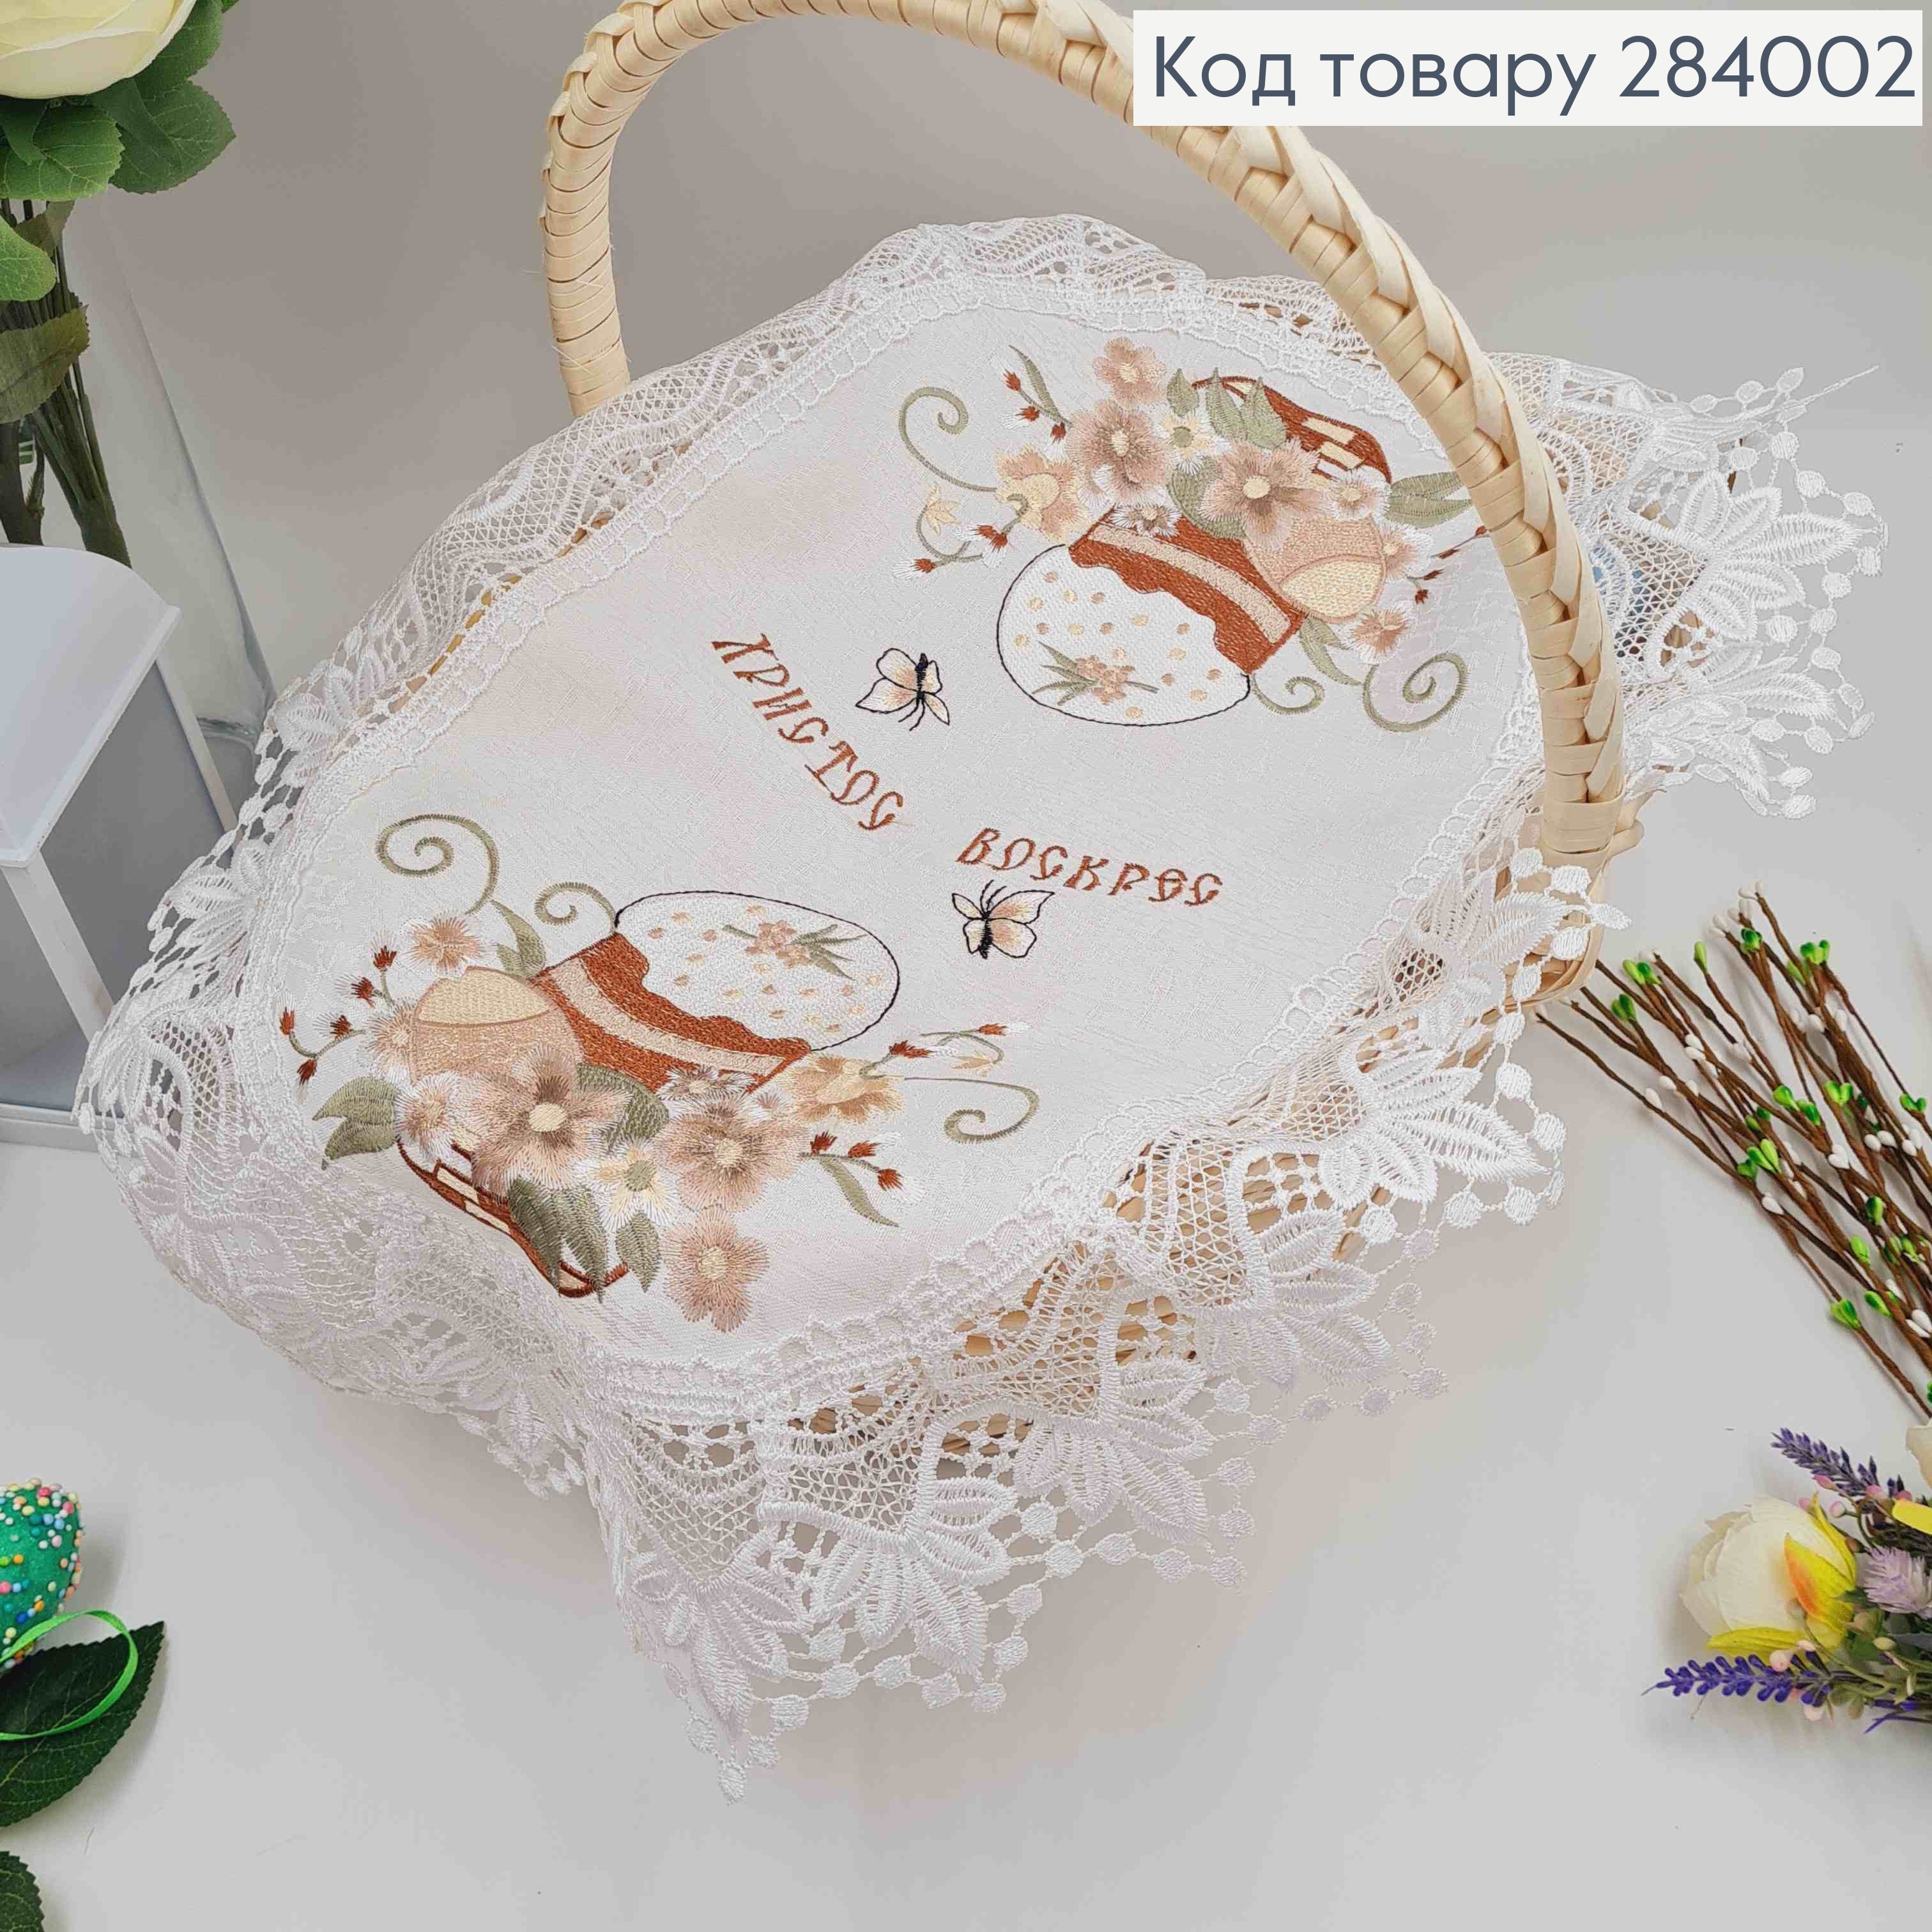 Пасхальная салфетка, с белым кружевом "Цветка с ивовыми веточками", овальная 40*60см 284002 фото 3